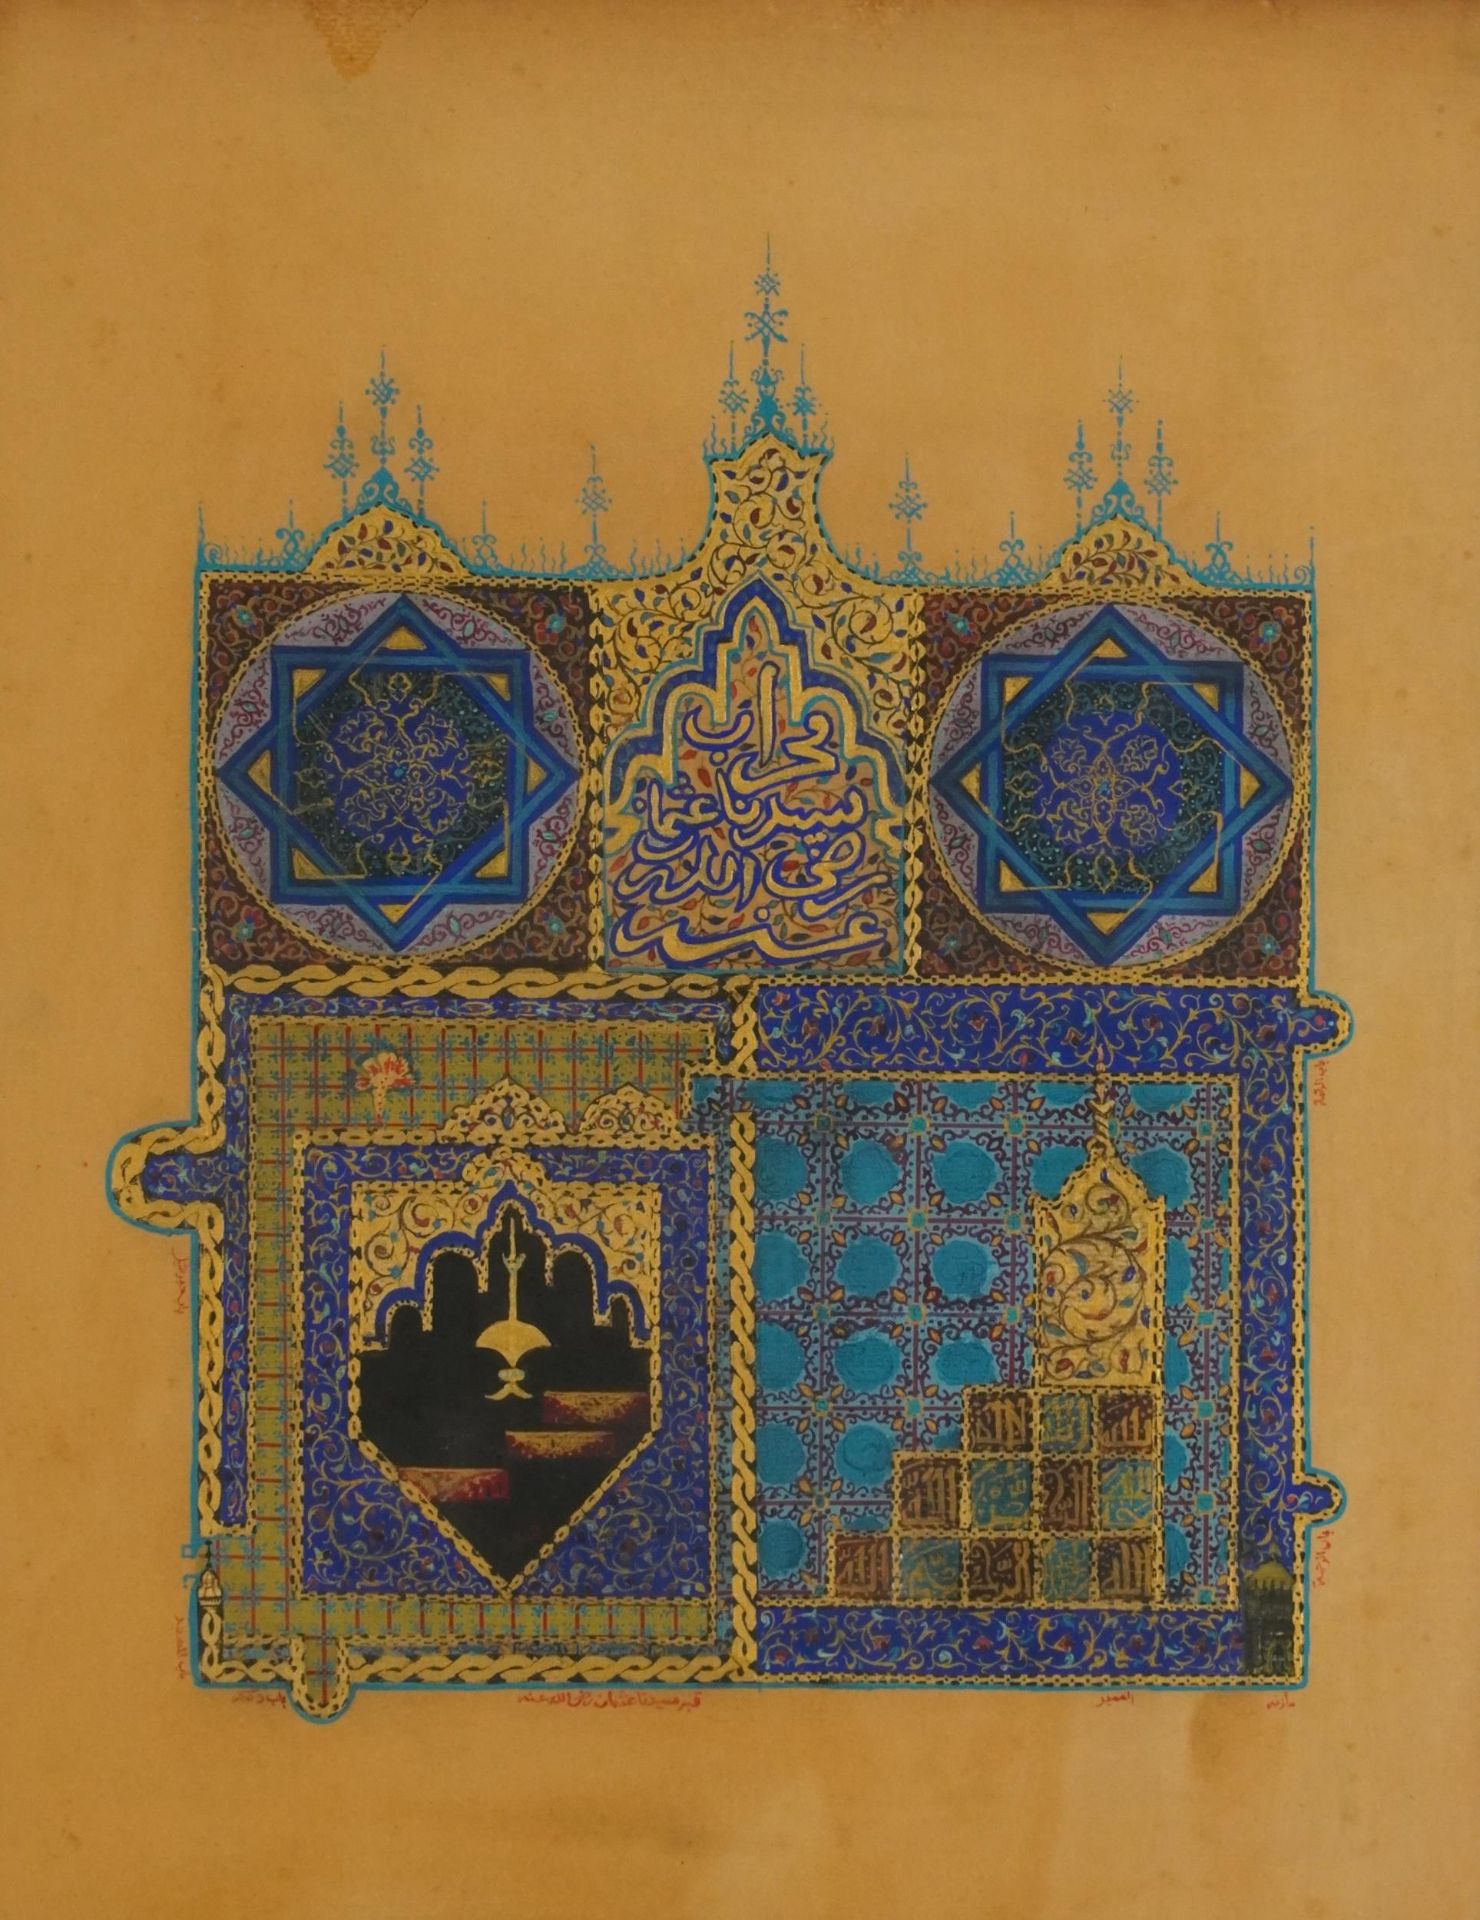 Tumba De Osman, Islamic illuminated mixed media, mounted, framed and glazed, 55cm x 43cm excluding